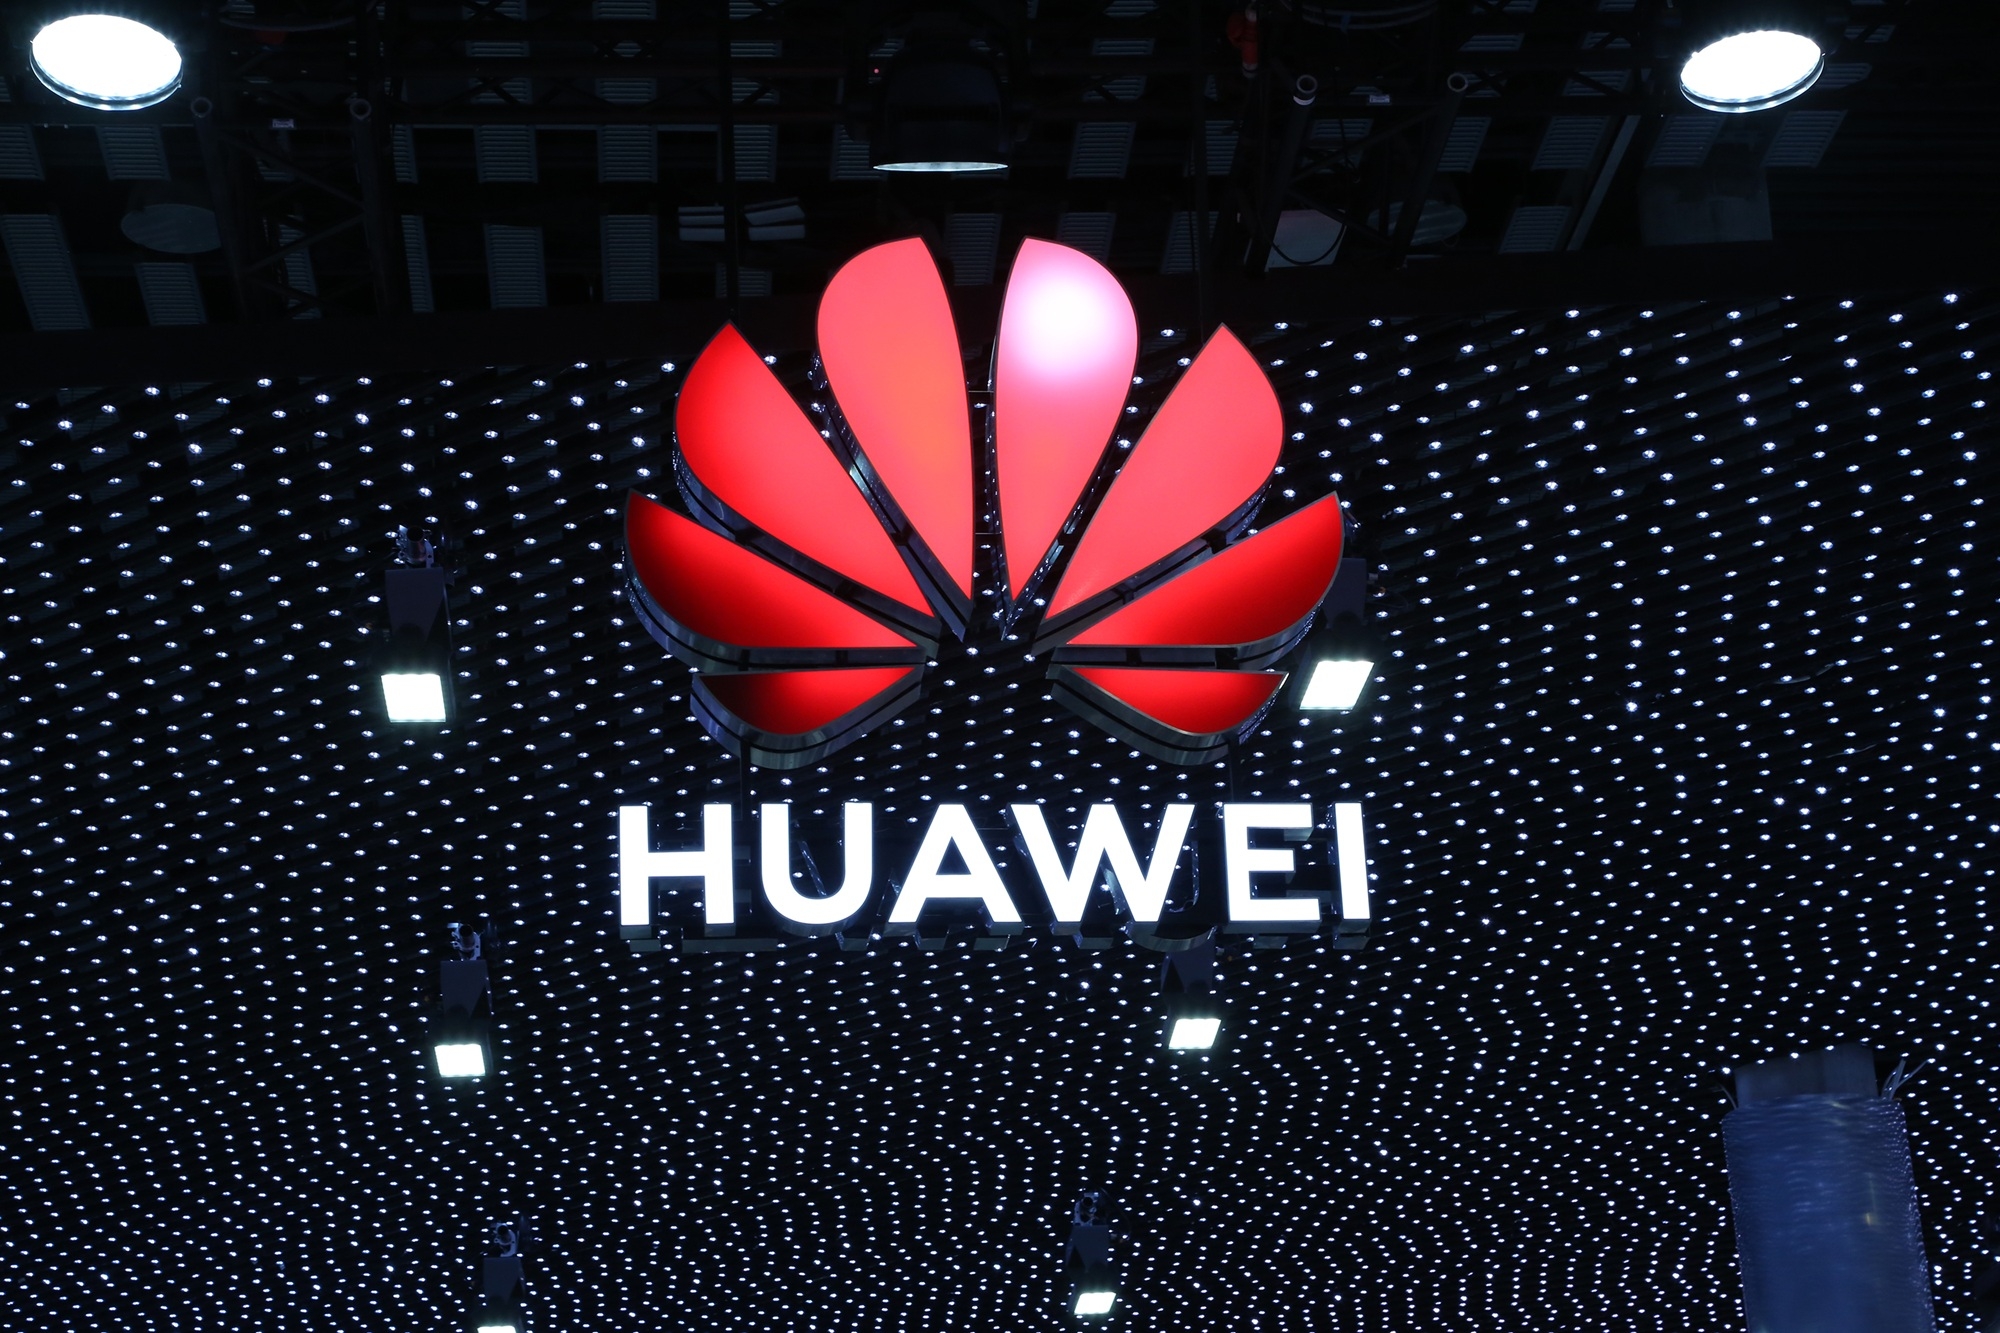 Huawei recebe mais 45 dias para continuar operando nos EUA